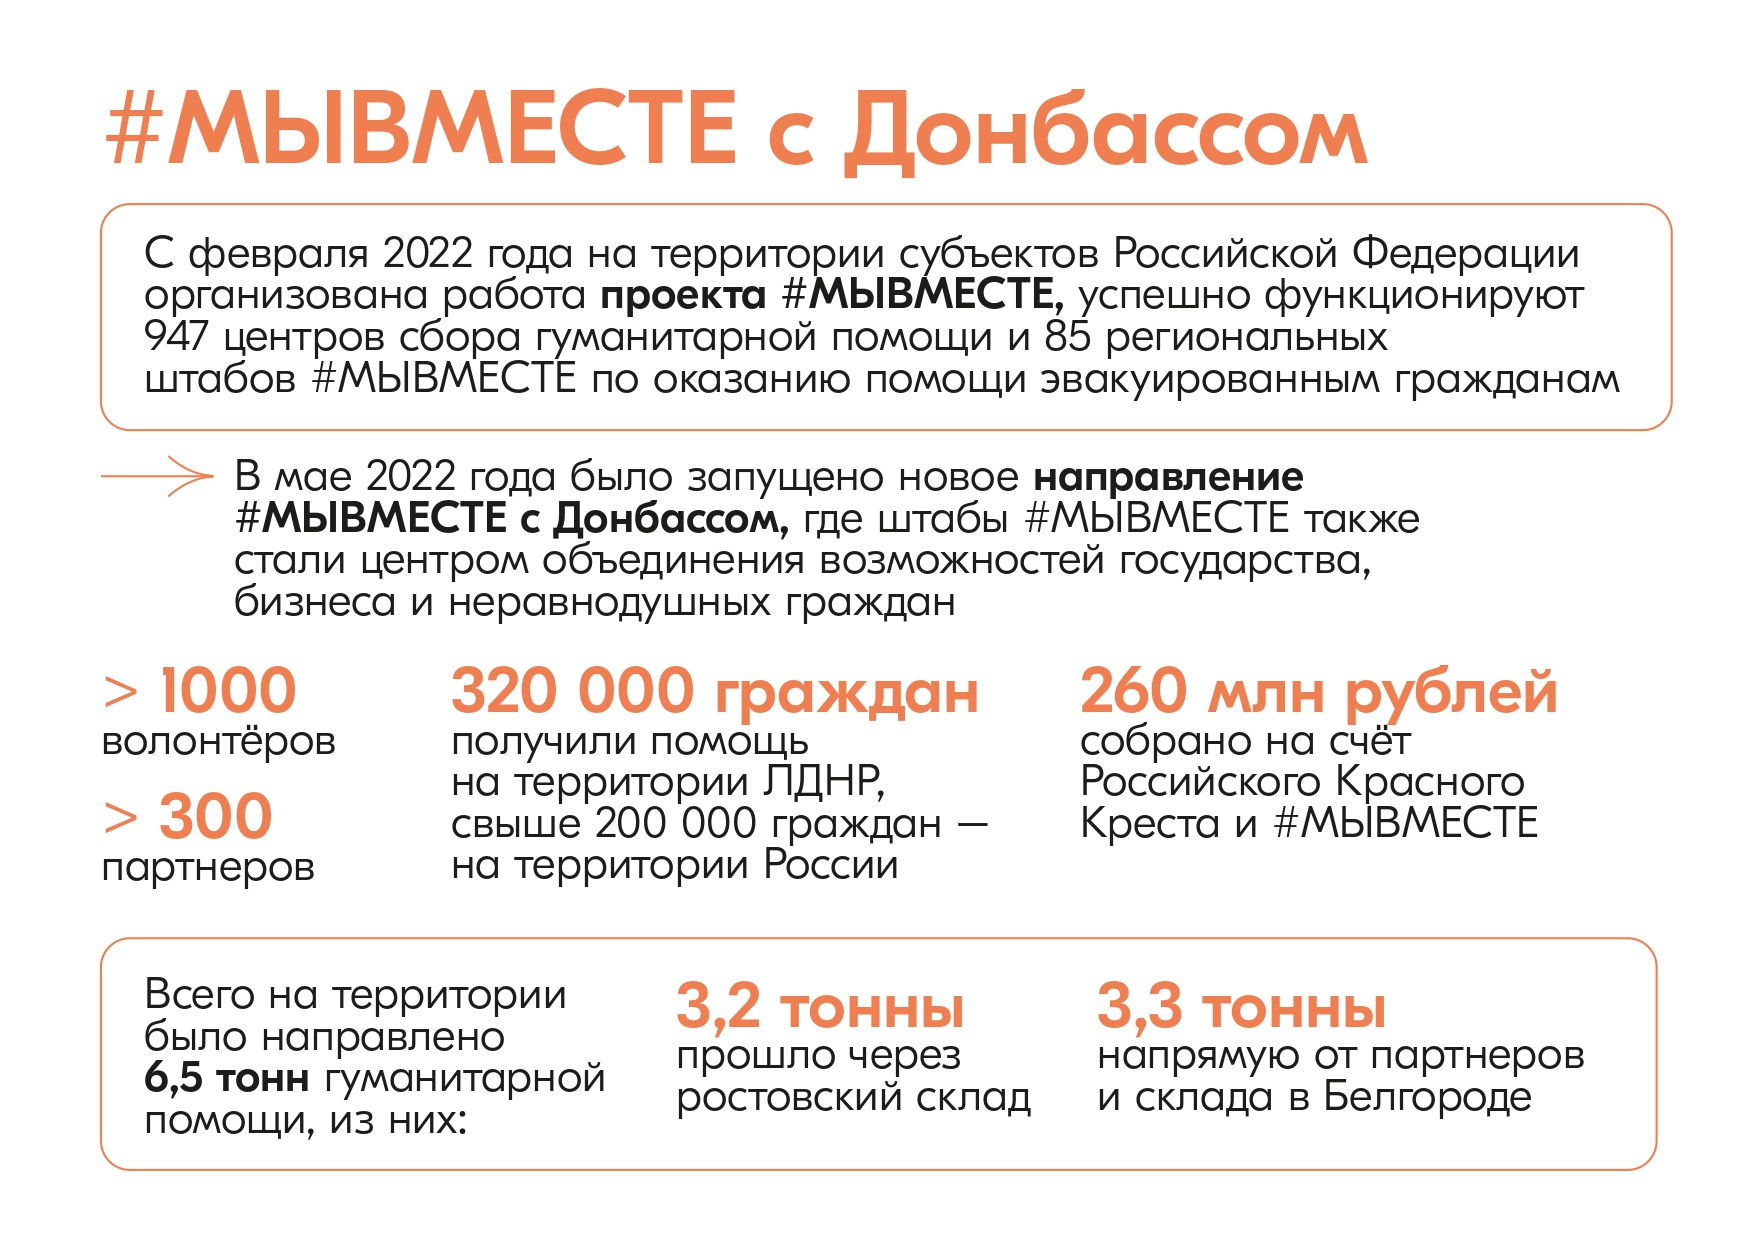 ФОТО к новости: Новосибирская область присоединилась к акции взаимопомощи #МЫВМЕСТЕ